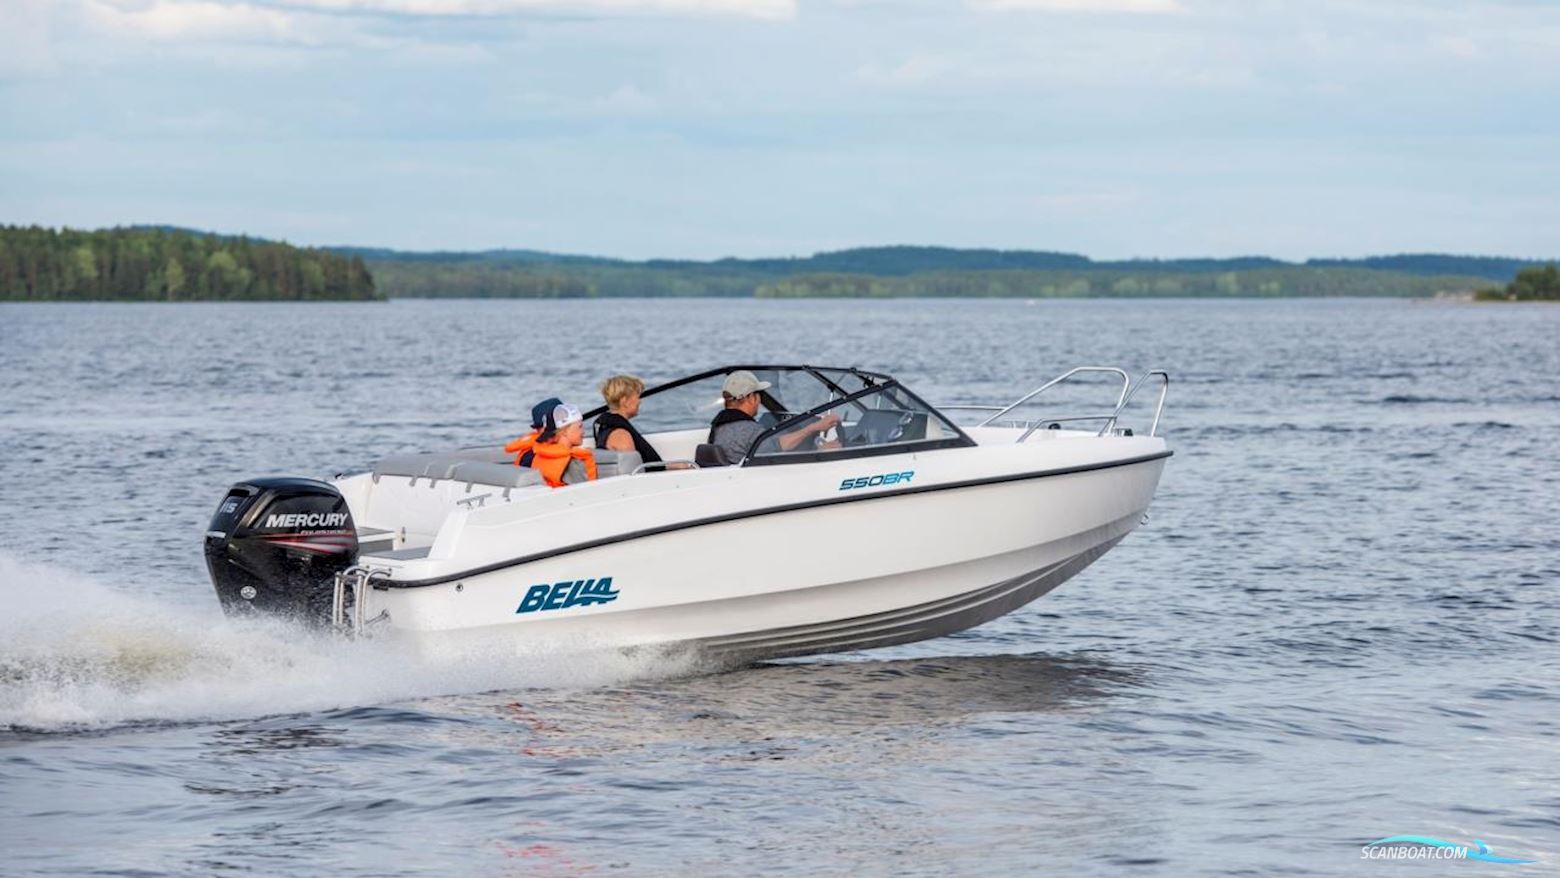 Bella 550 BR Motorboot 2022, mit Mercury motor, Sweden